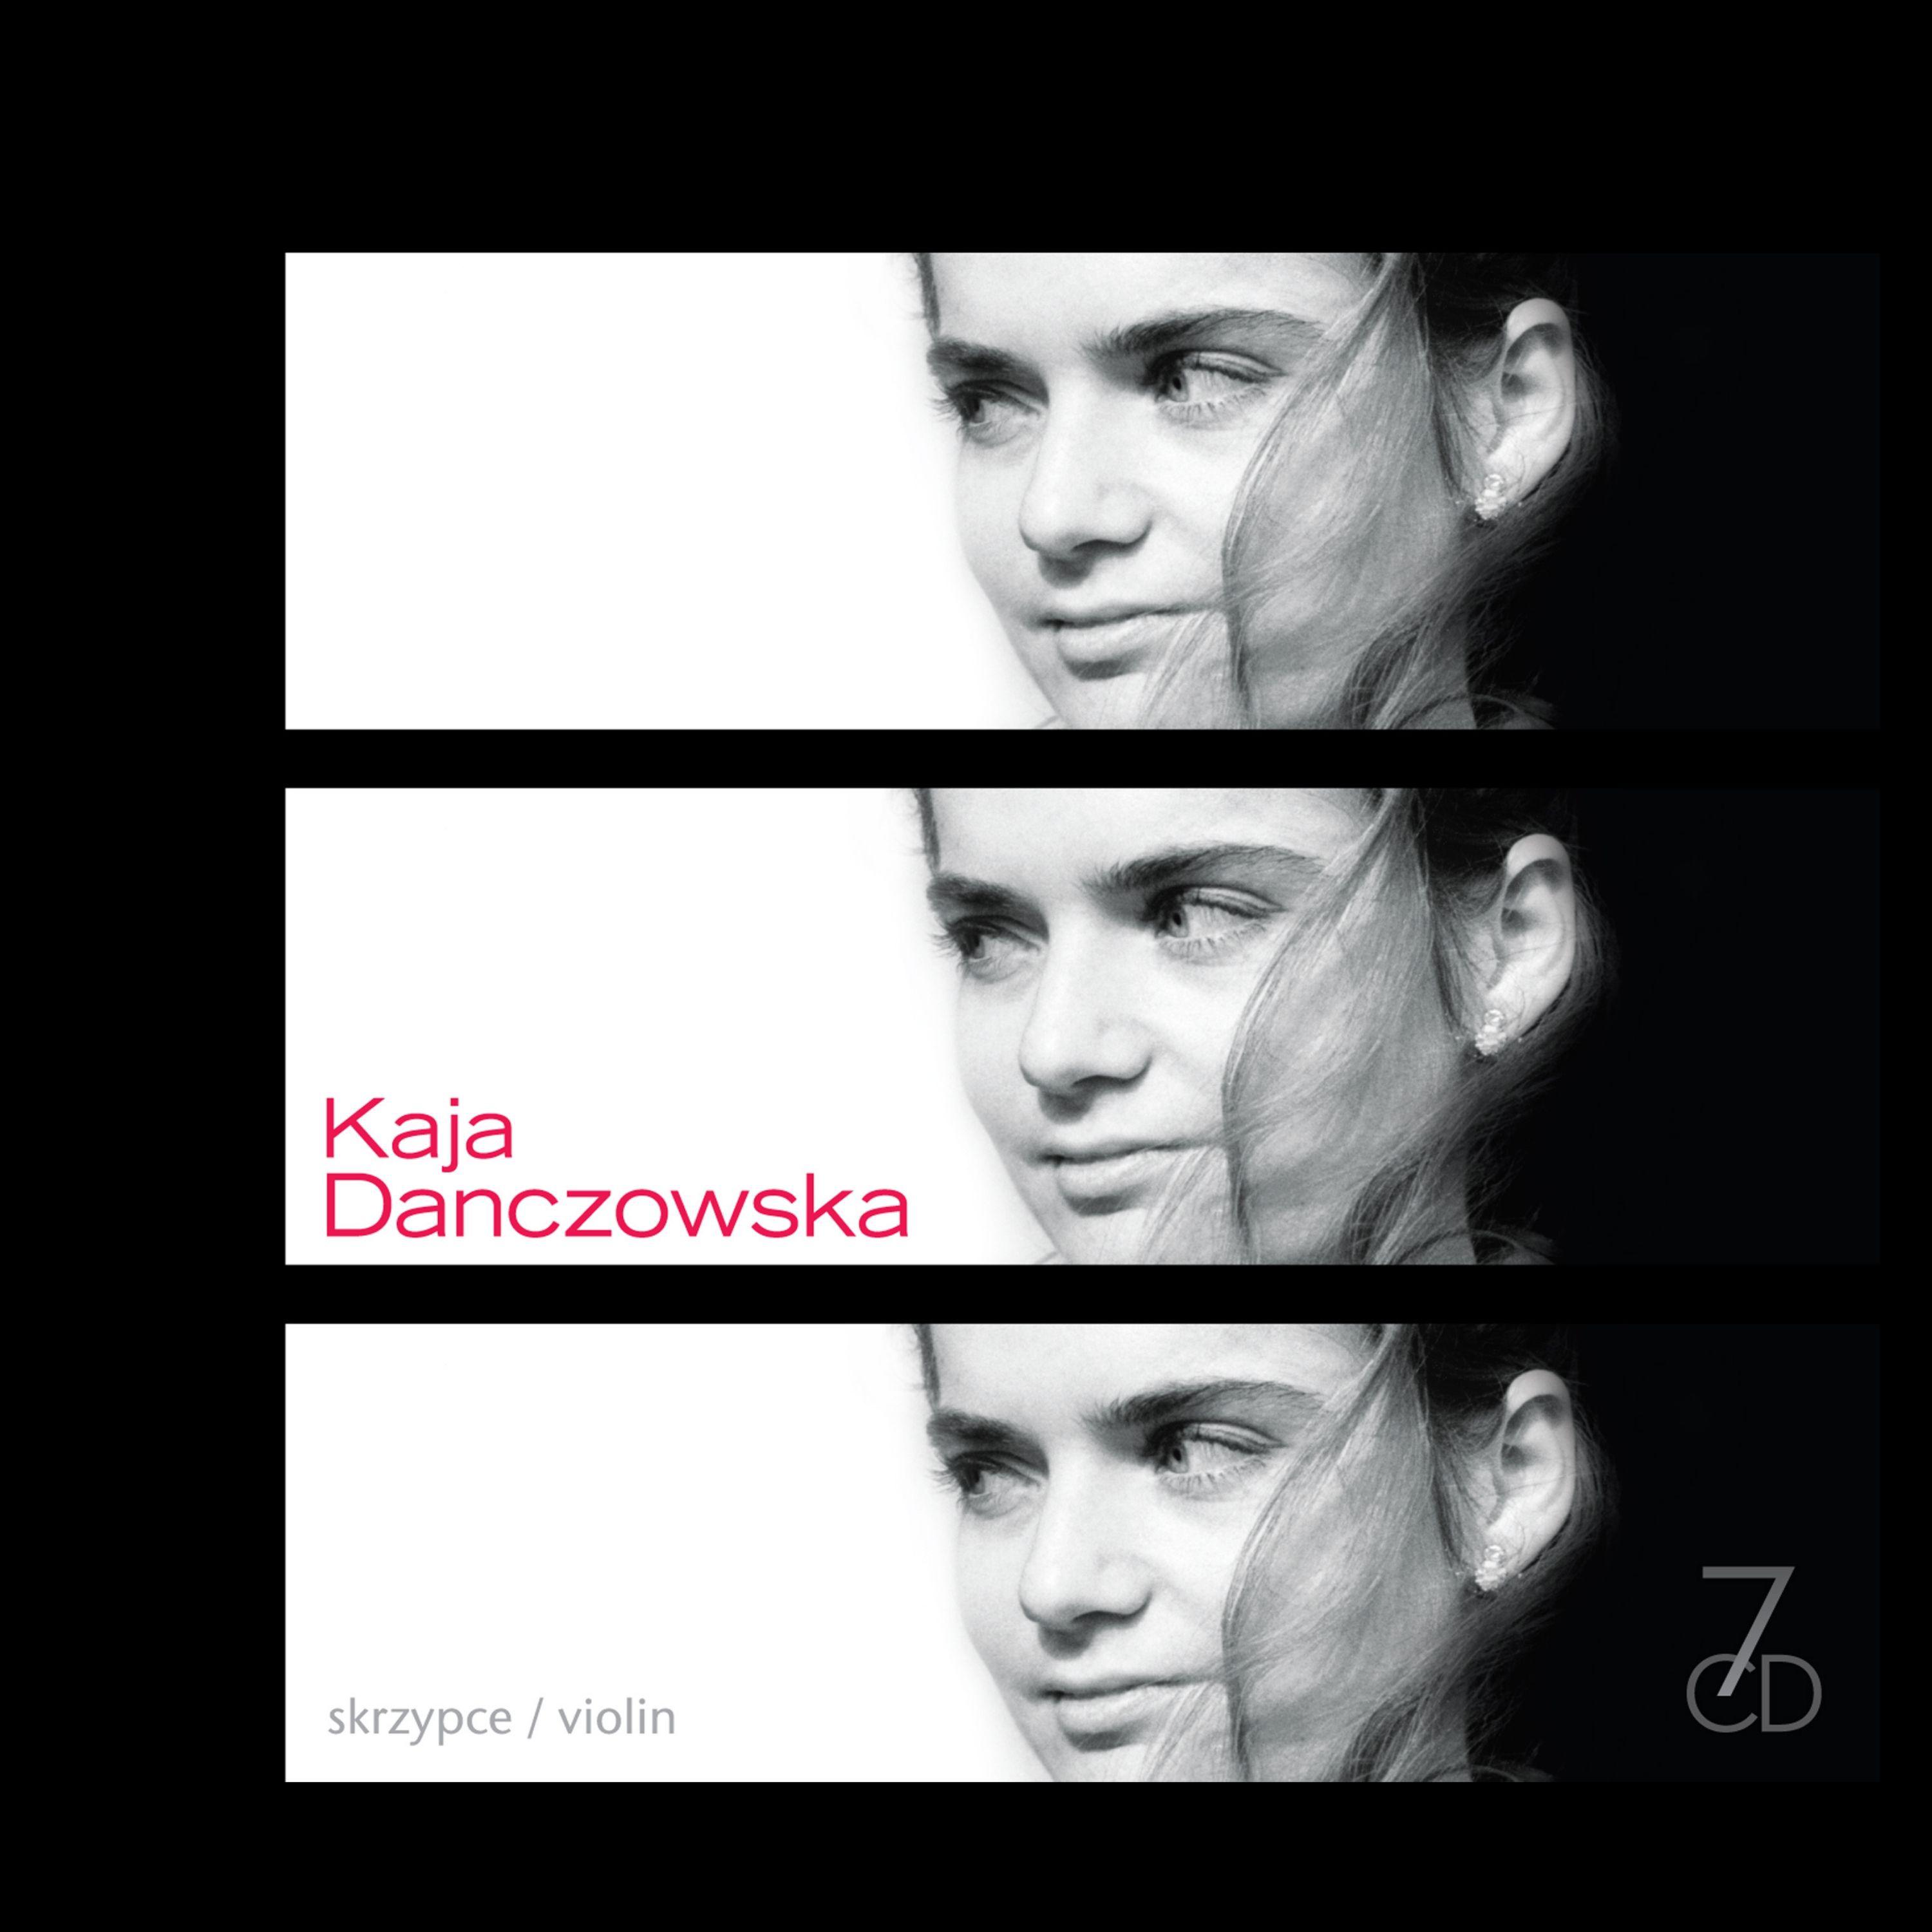 Kaja Danczowska - Melodia z II aktu opery Orfeo ed Euridice, Wq. 30